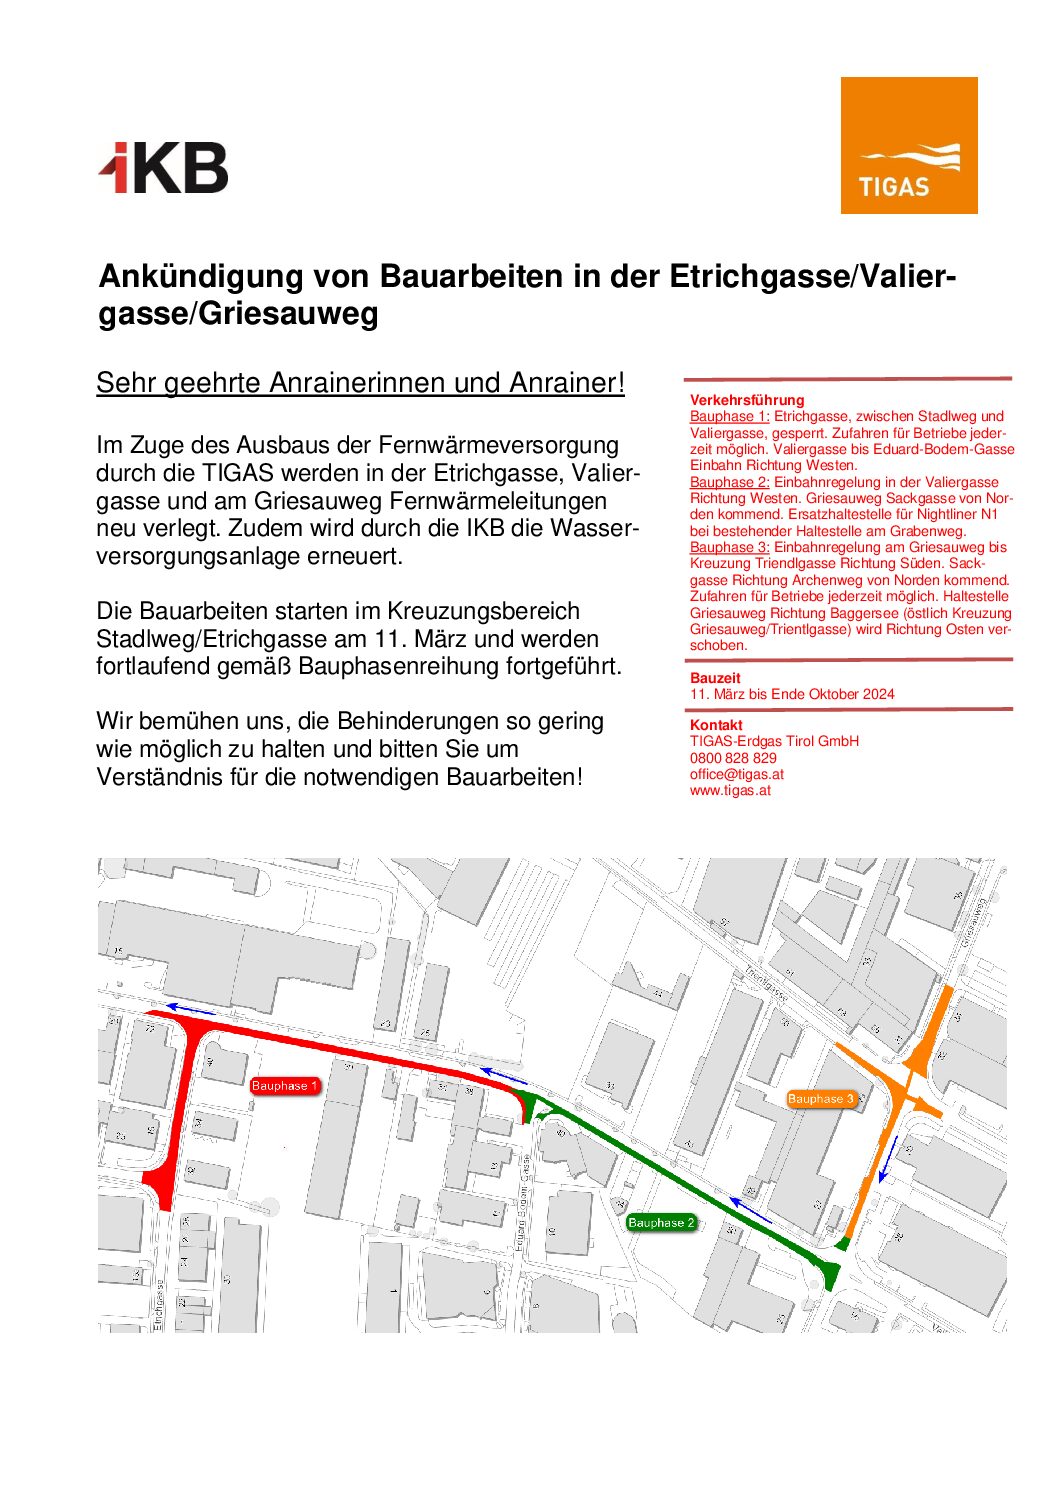 Ankündigung von Bauarbeiten in der Etrichgasse/Valiergasse/Griesauweg